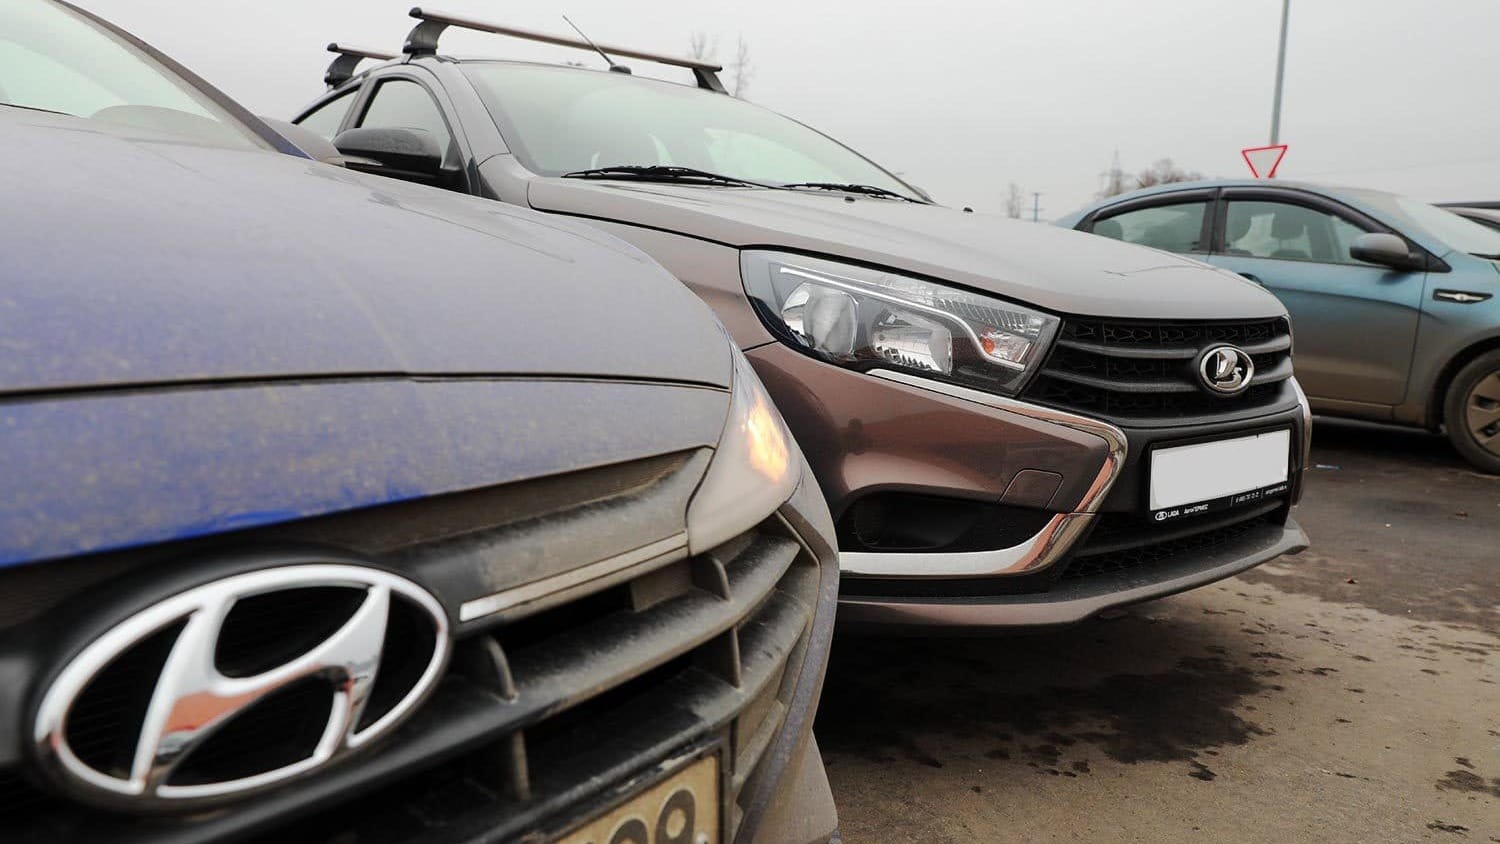 Государству вернули восемь машин стоимостью 4.1 млн сомов – ими незаконно владела Налоговая служба